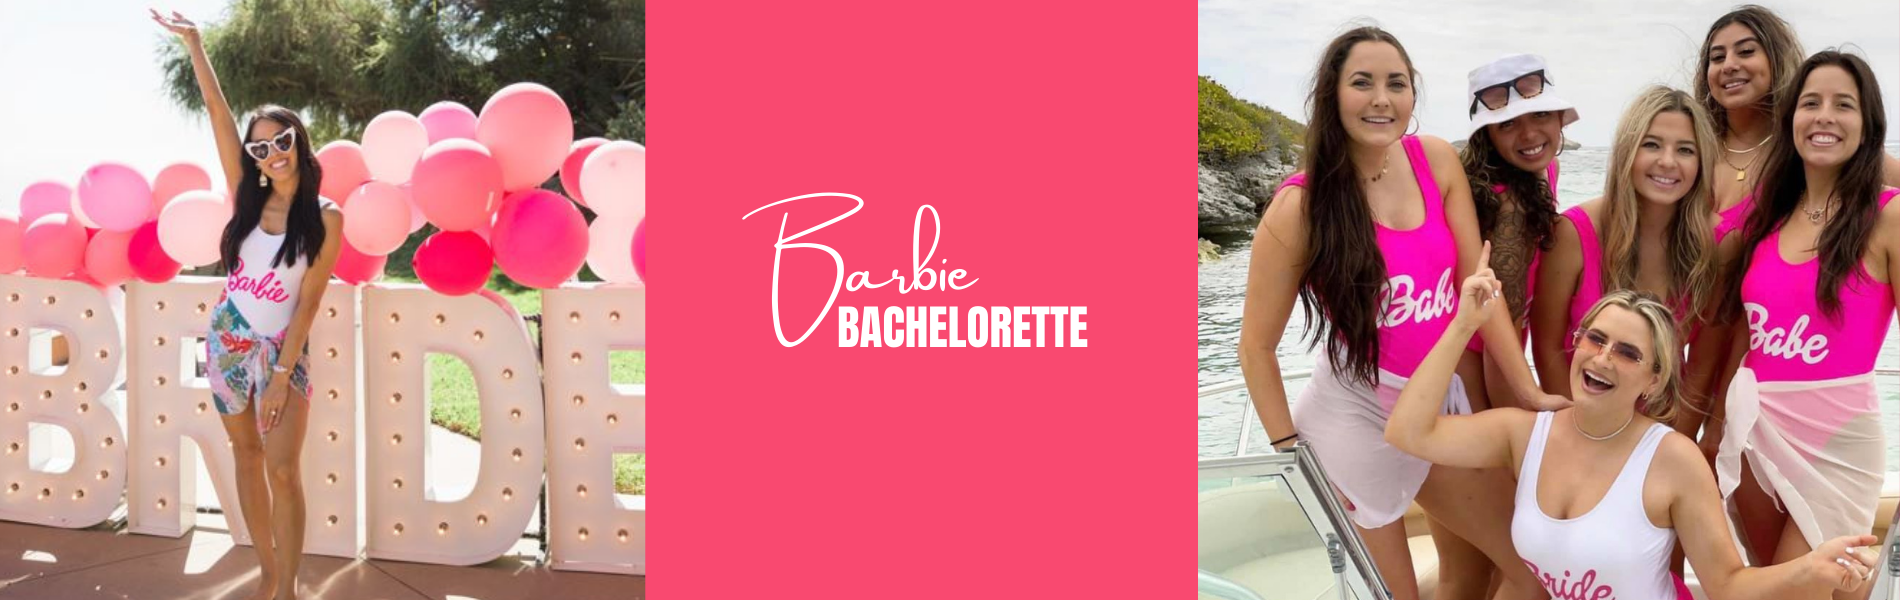 Barbie Bachelorette Party